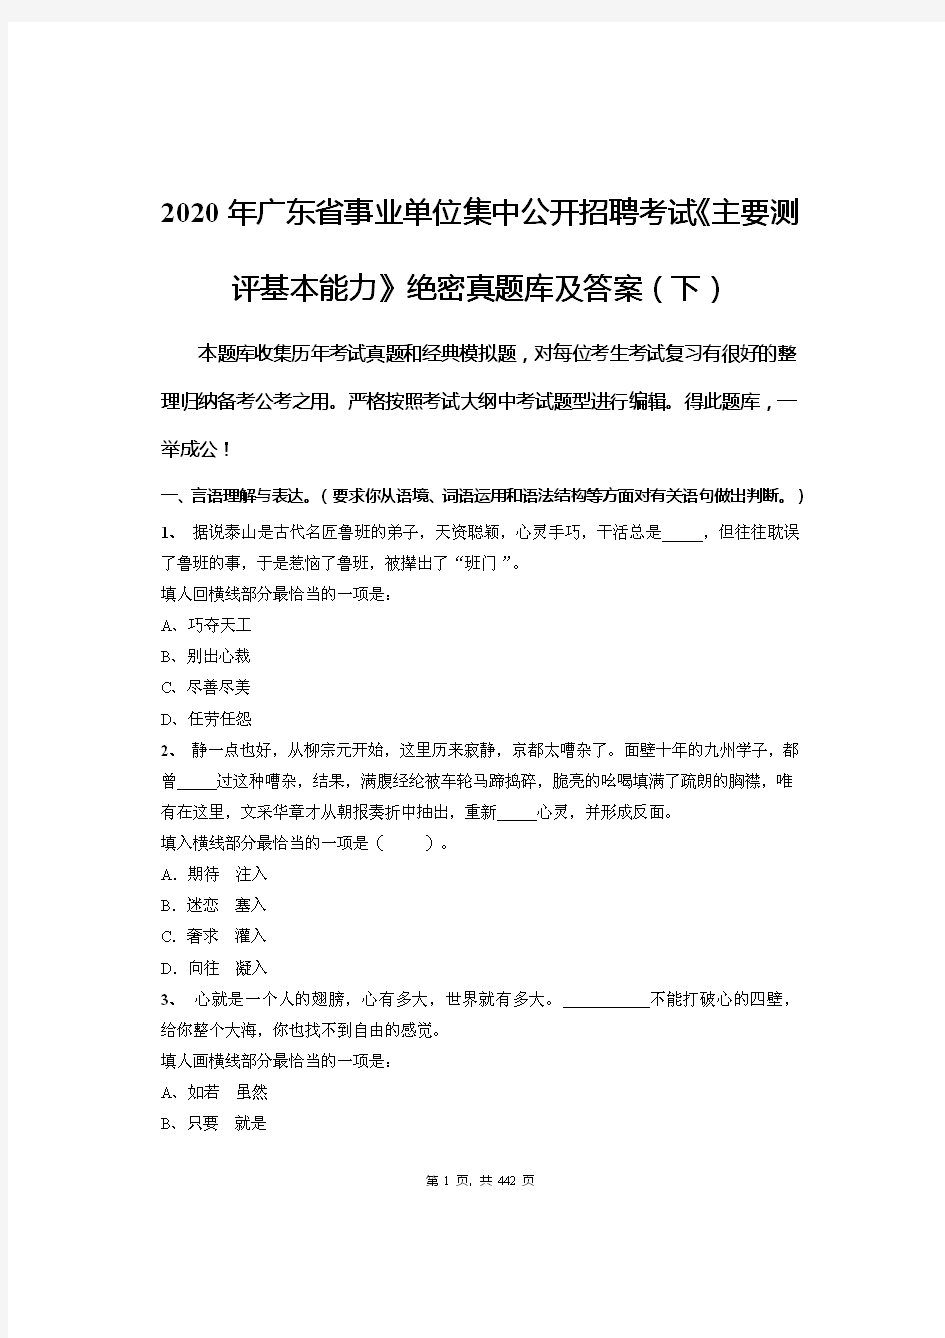 2020年广东省事业单位集中公开招聘考试《主要测评基本能力》绝密真题库及答案(下)